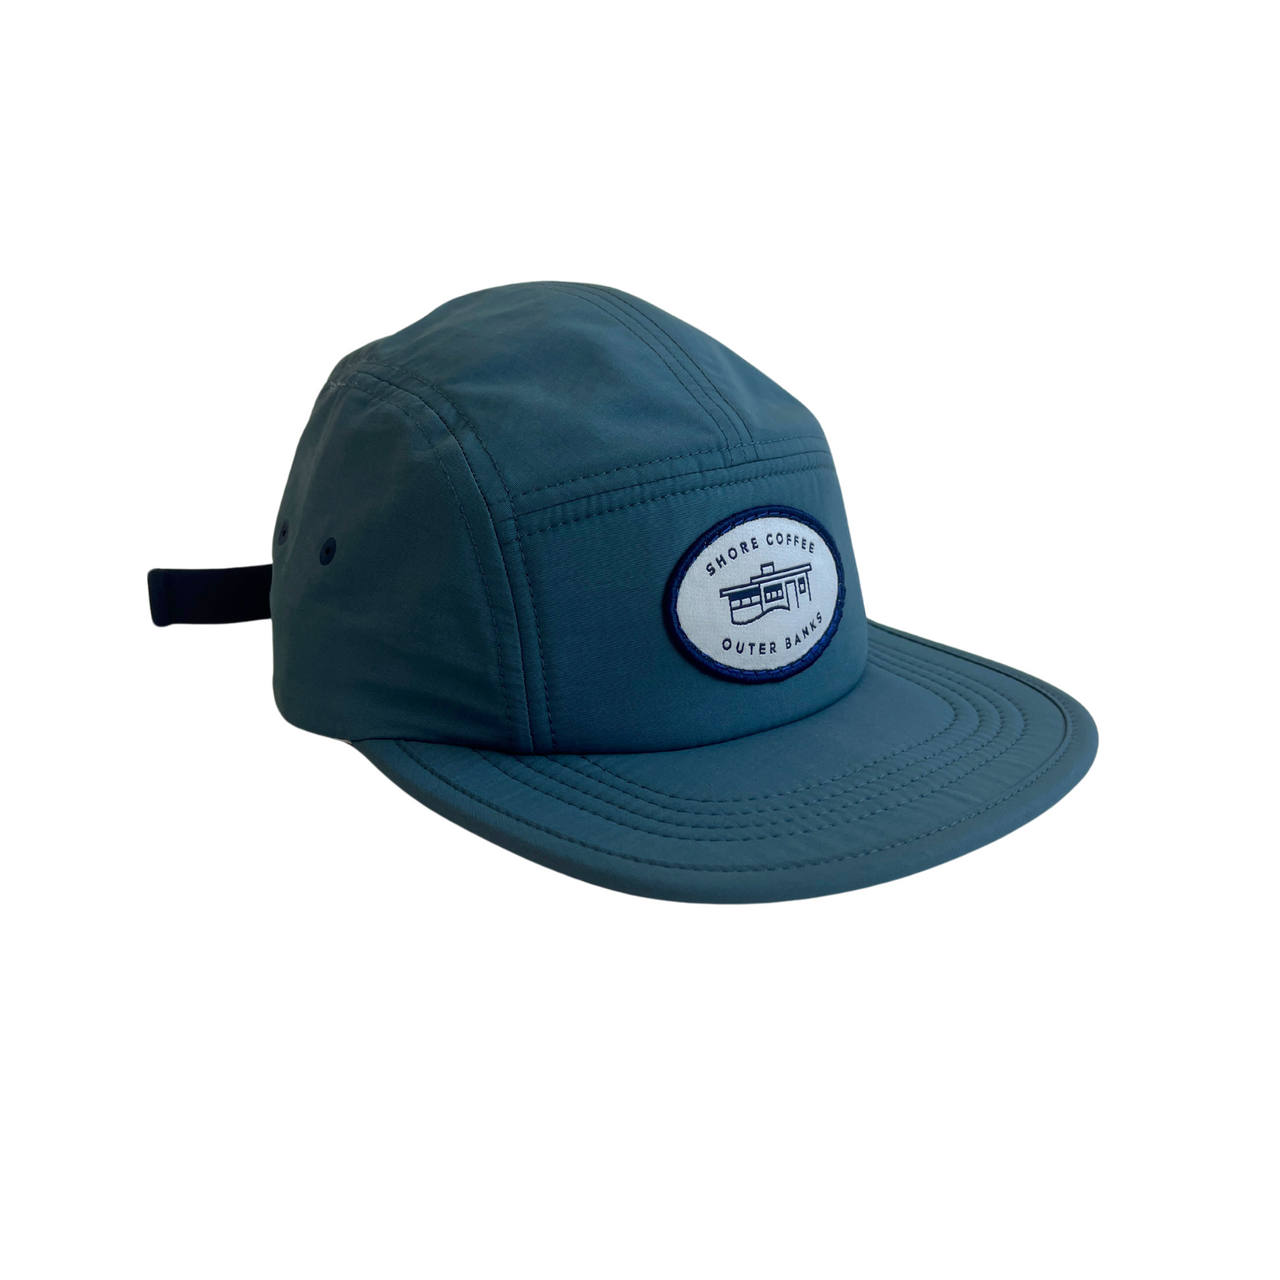 SHORE Flat Top Camper Hat